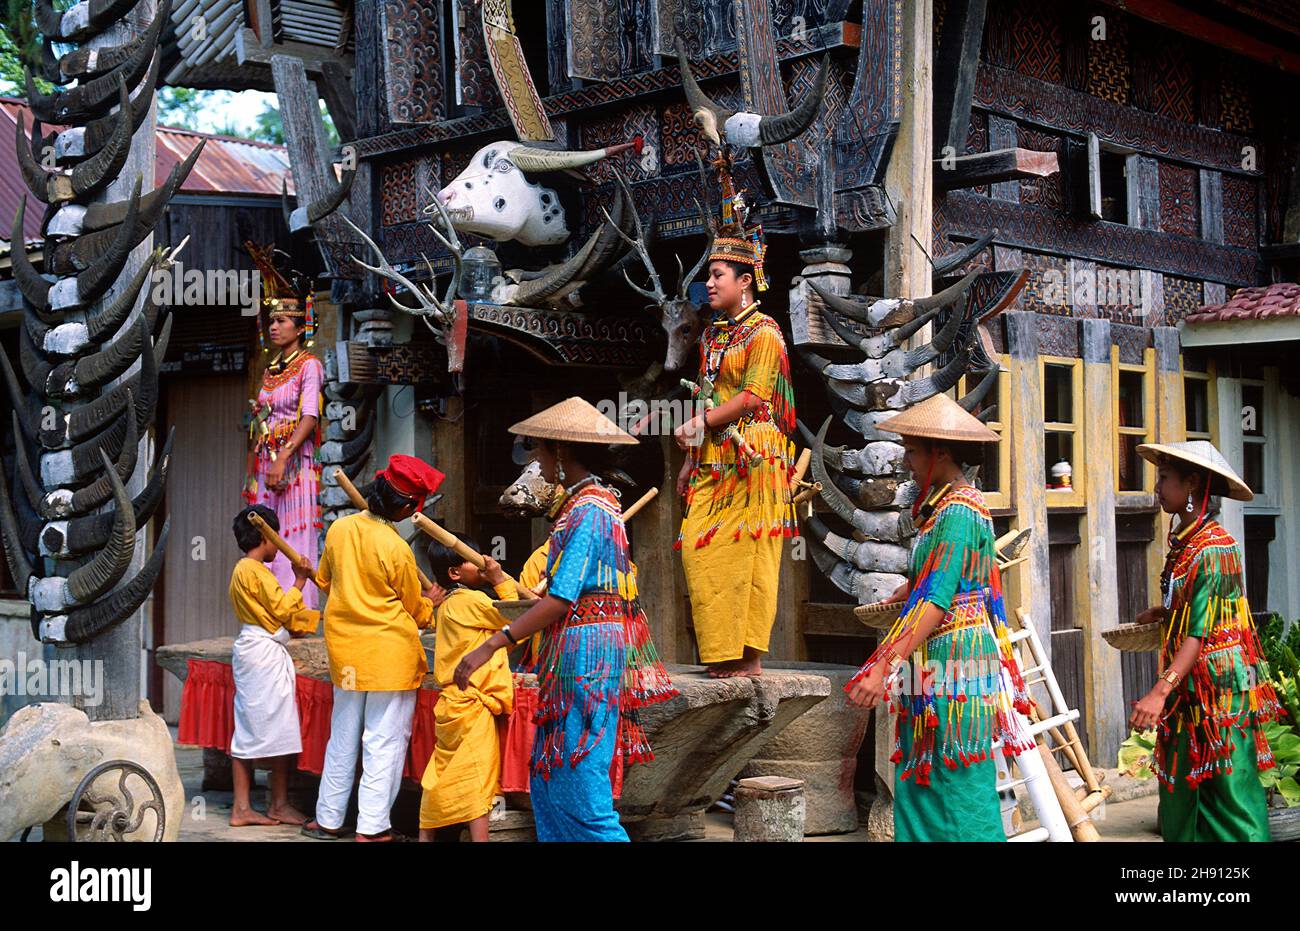 Groupe musical de jeunes et danseurs traditionnels.Tana Toraja, Sulawesi, Indonésie. Banque D'Images